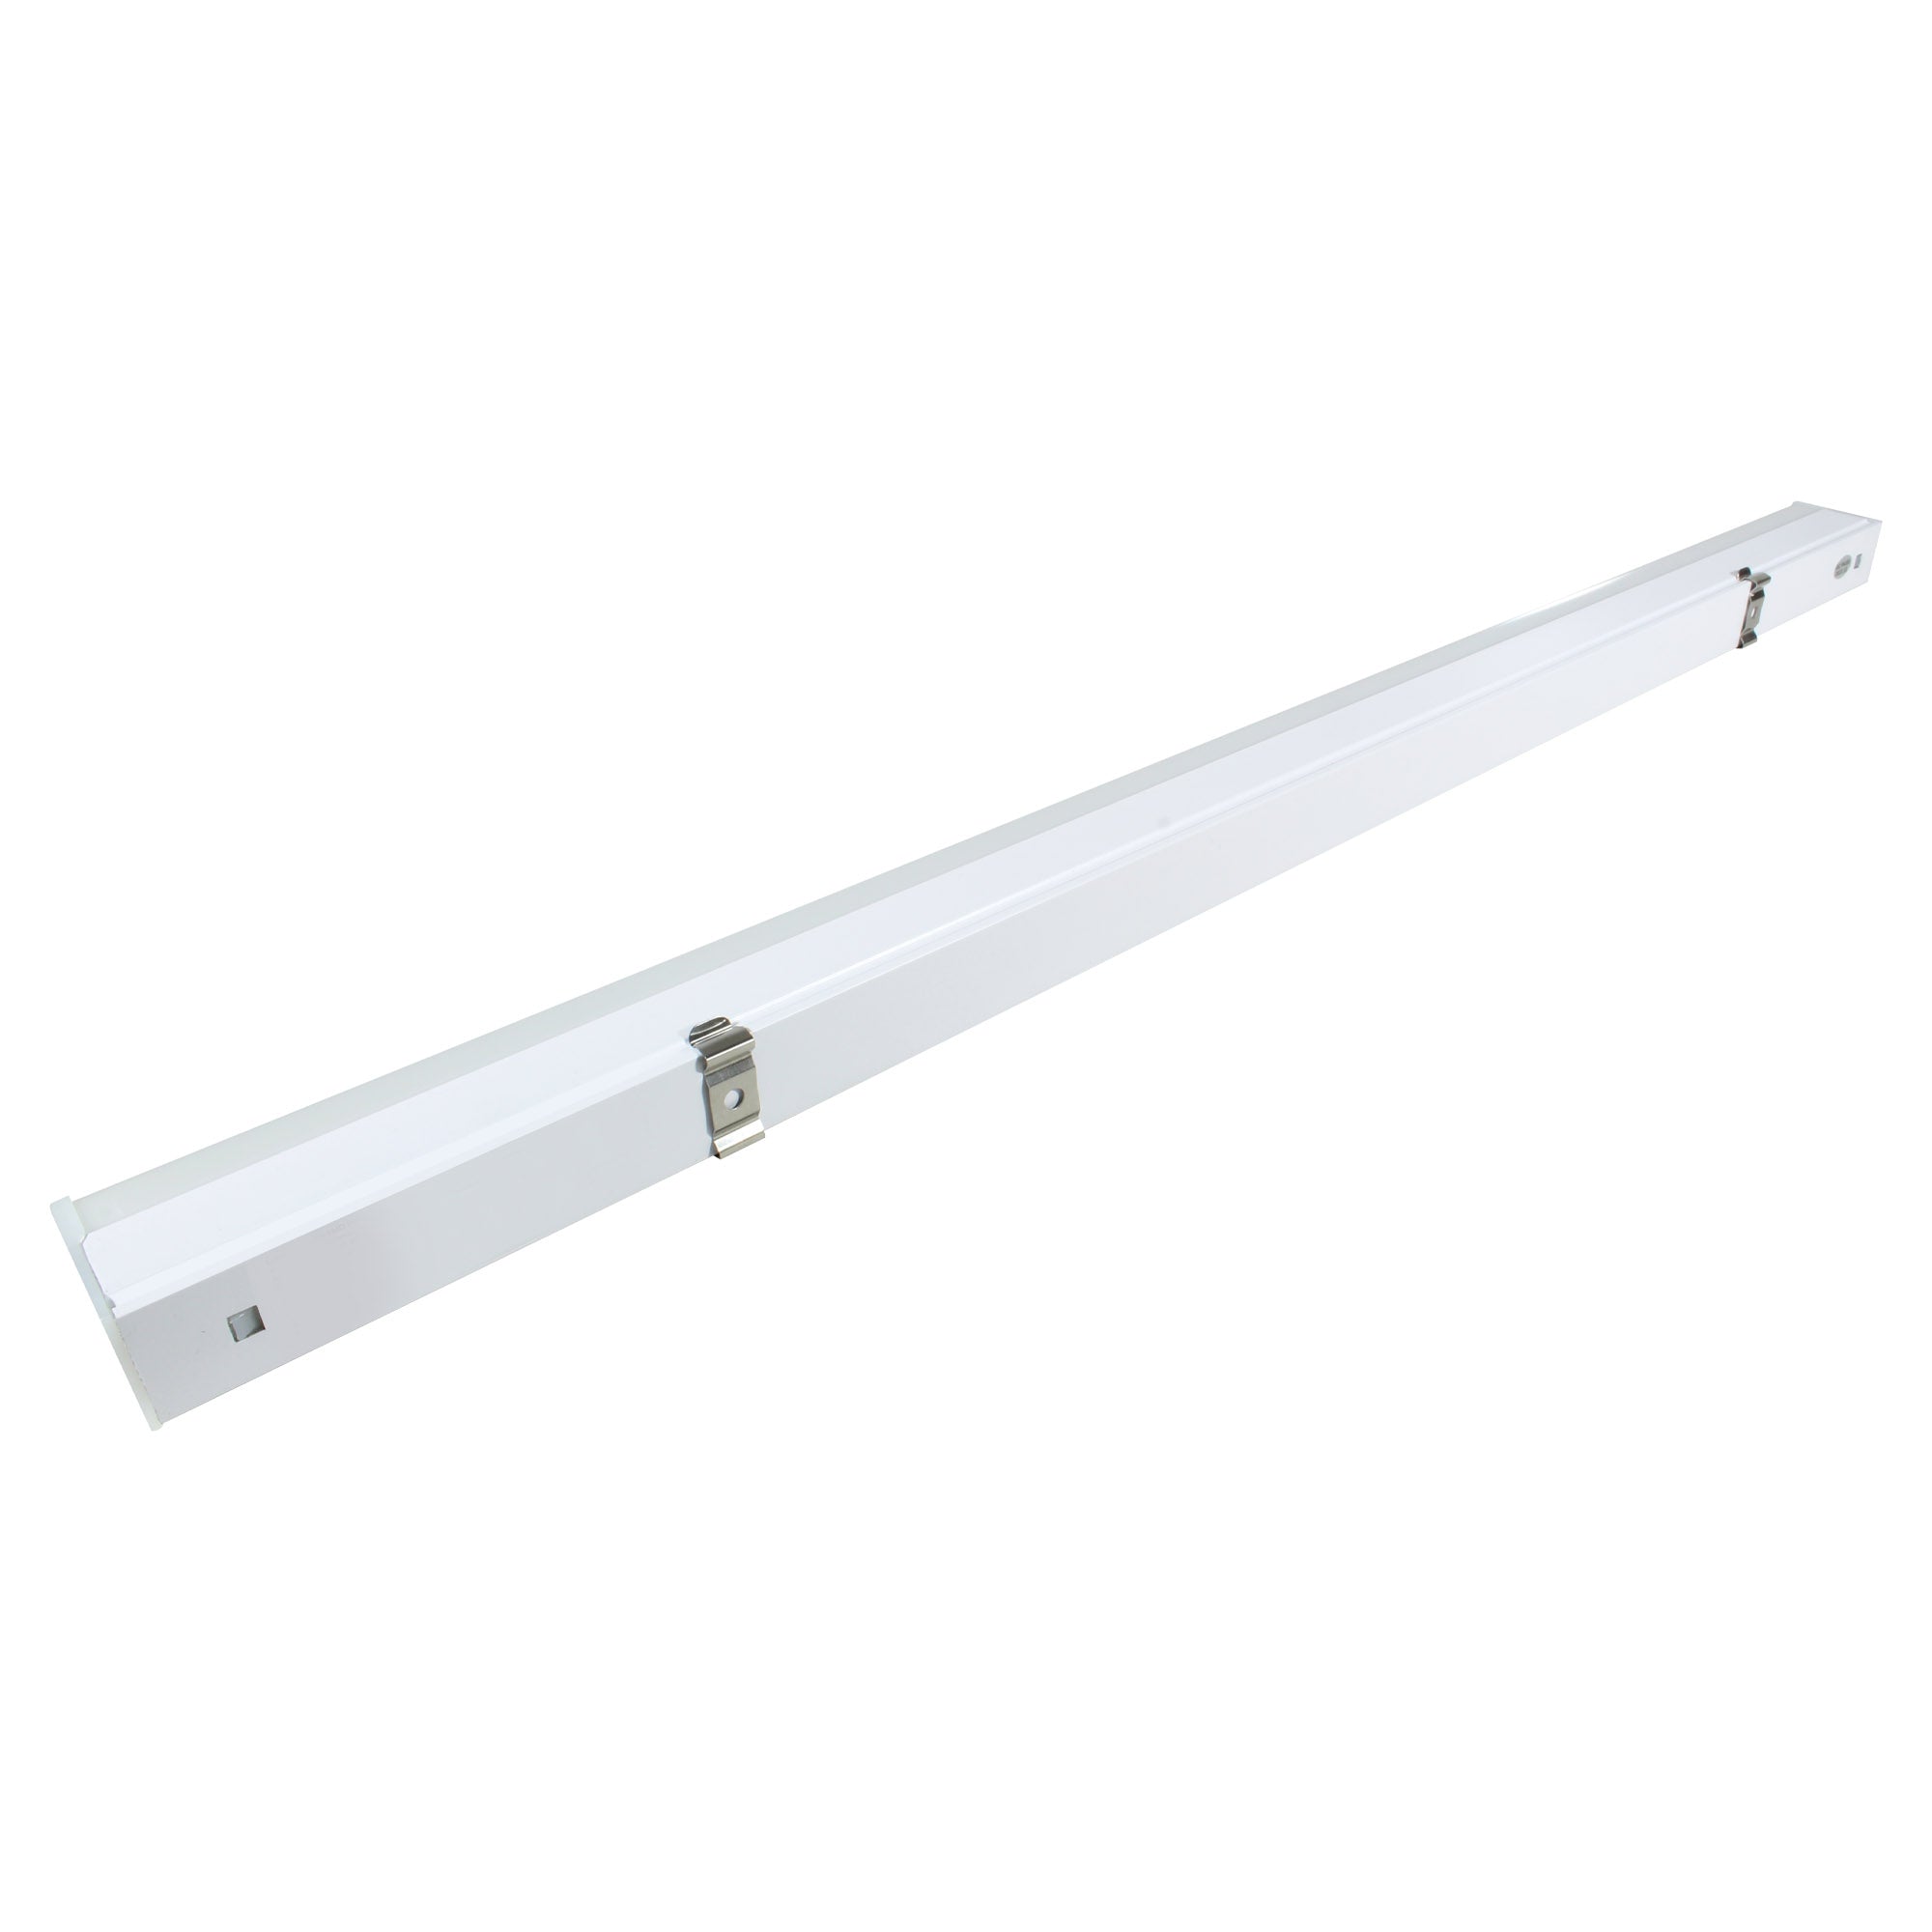 Lámpara Illux LED estilo regleta de sobreponer en techo Atenuable blanco interconectable 14 W, TL-1510.BDIM